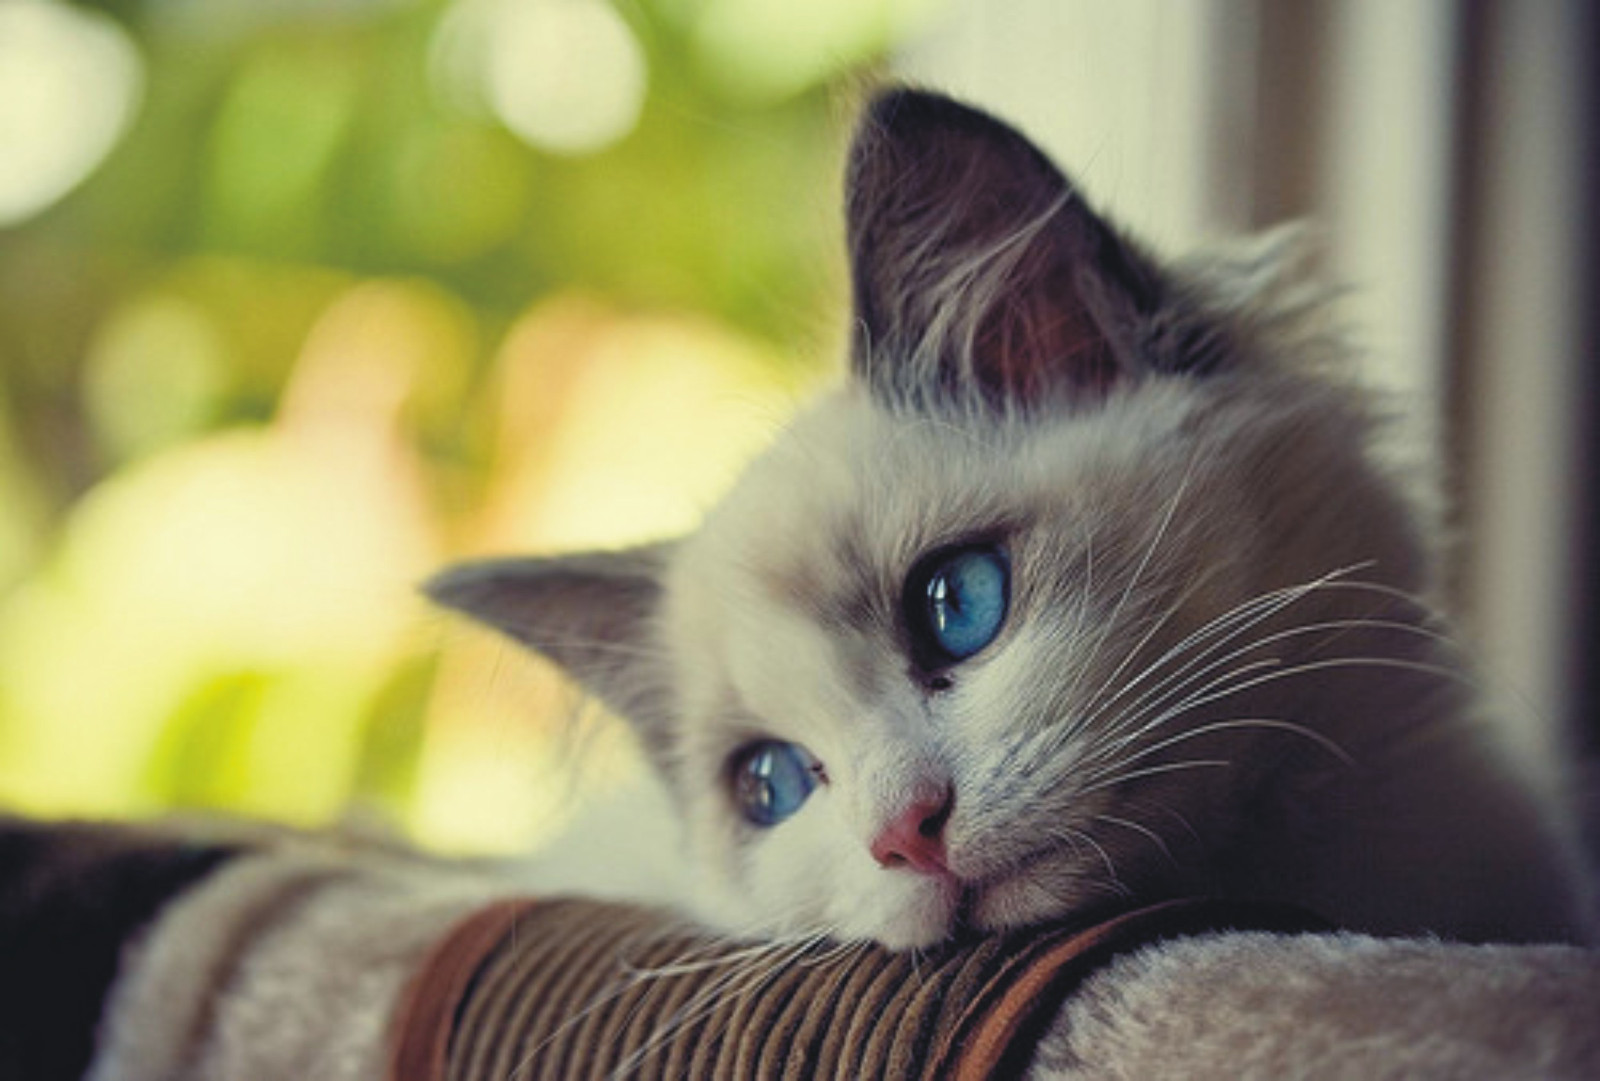 Mèo nhỏ và đôi mắt xanh lấp lánh ánh buồn.